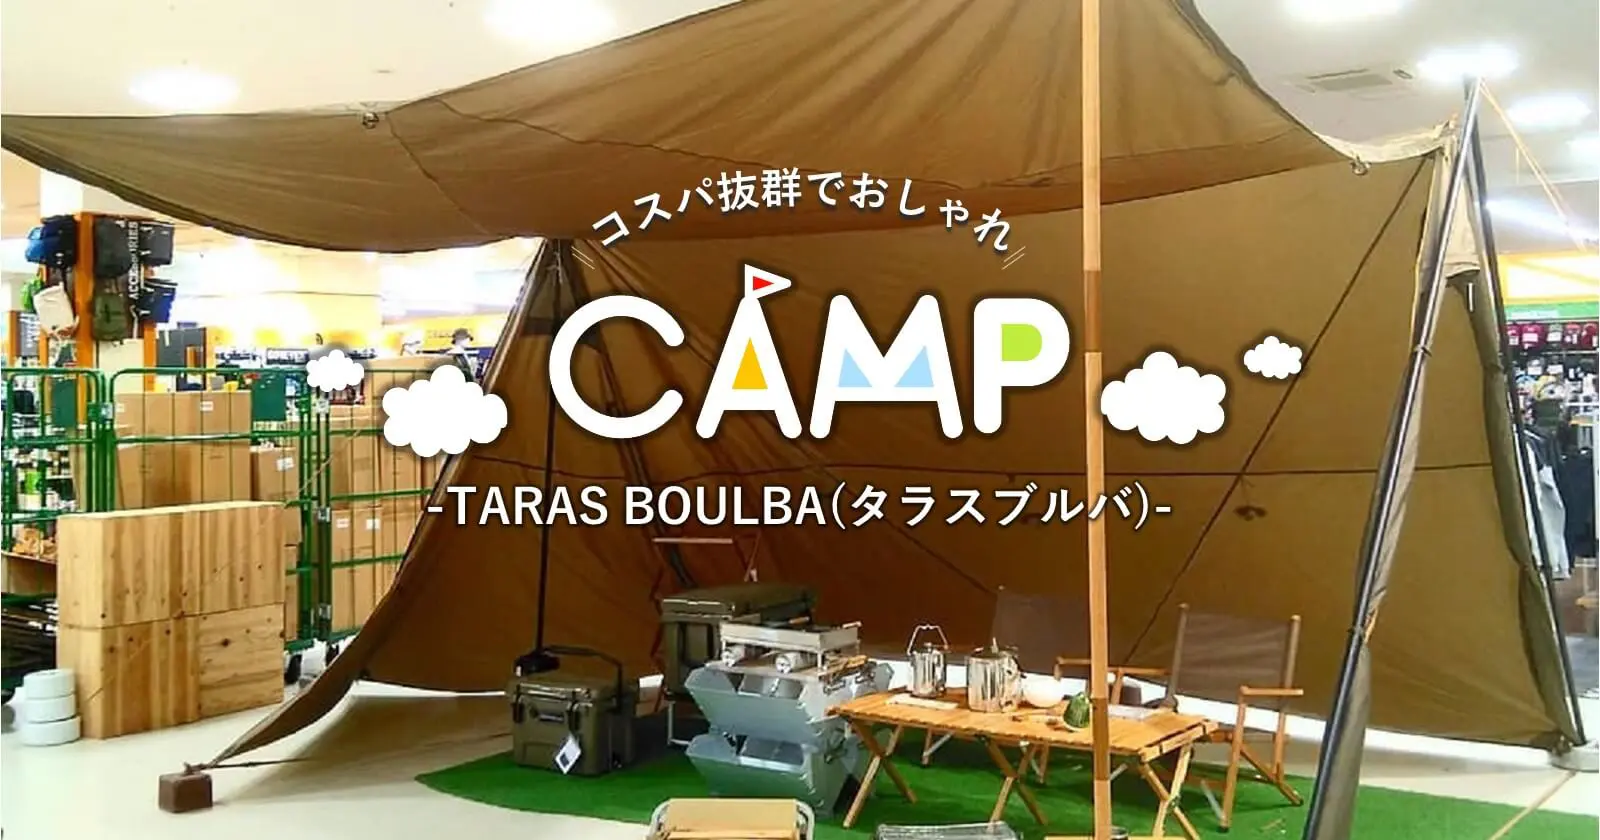 TARAS BOULBA（タラスブルバ）はおしゃれキャンプのマスト 